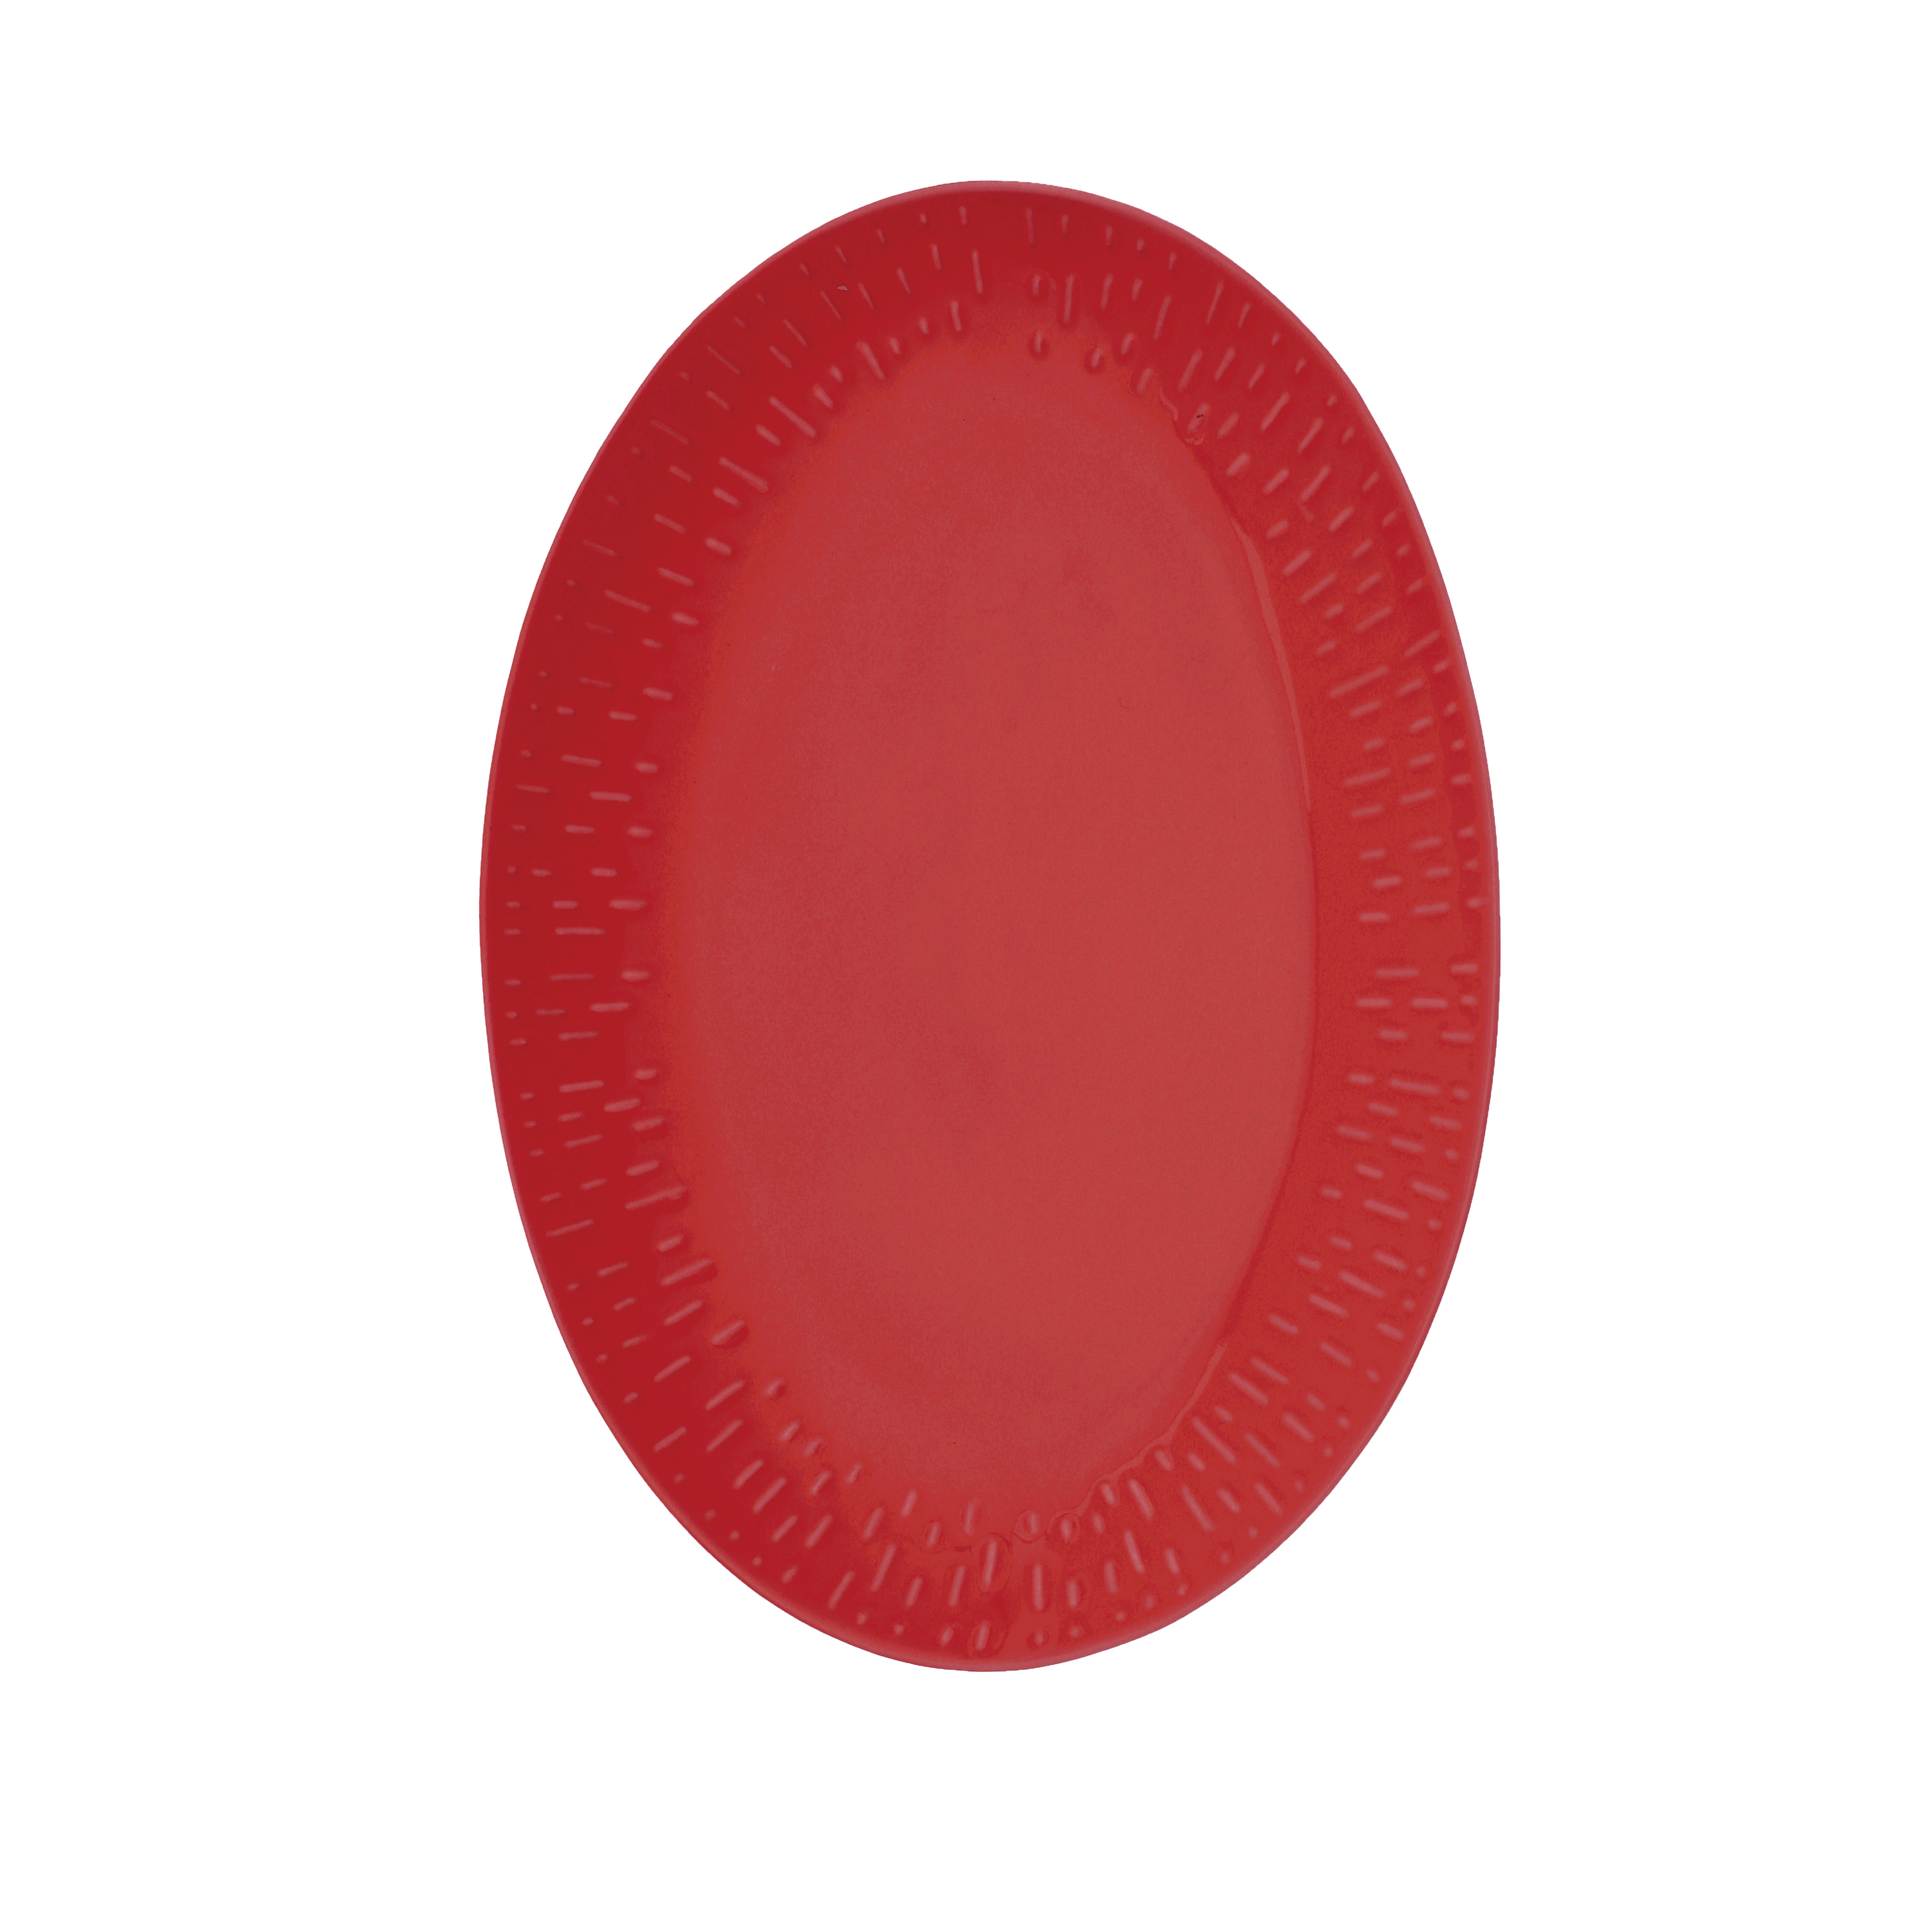 Aida - Life in Colour - Confetti - Chili oval dish w/relief porcelain (13474) - Hjemme og kjøkken